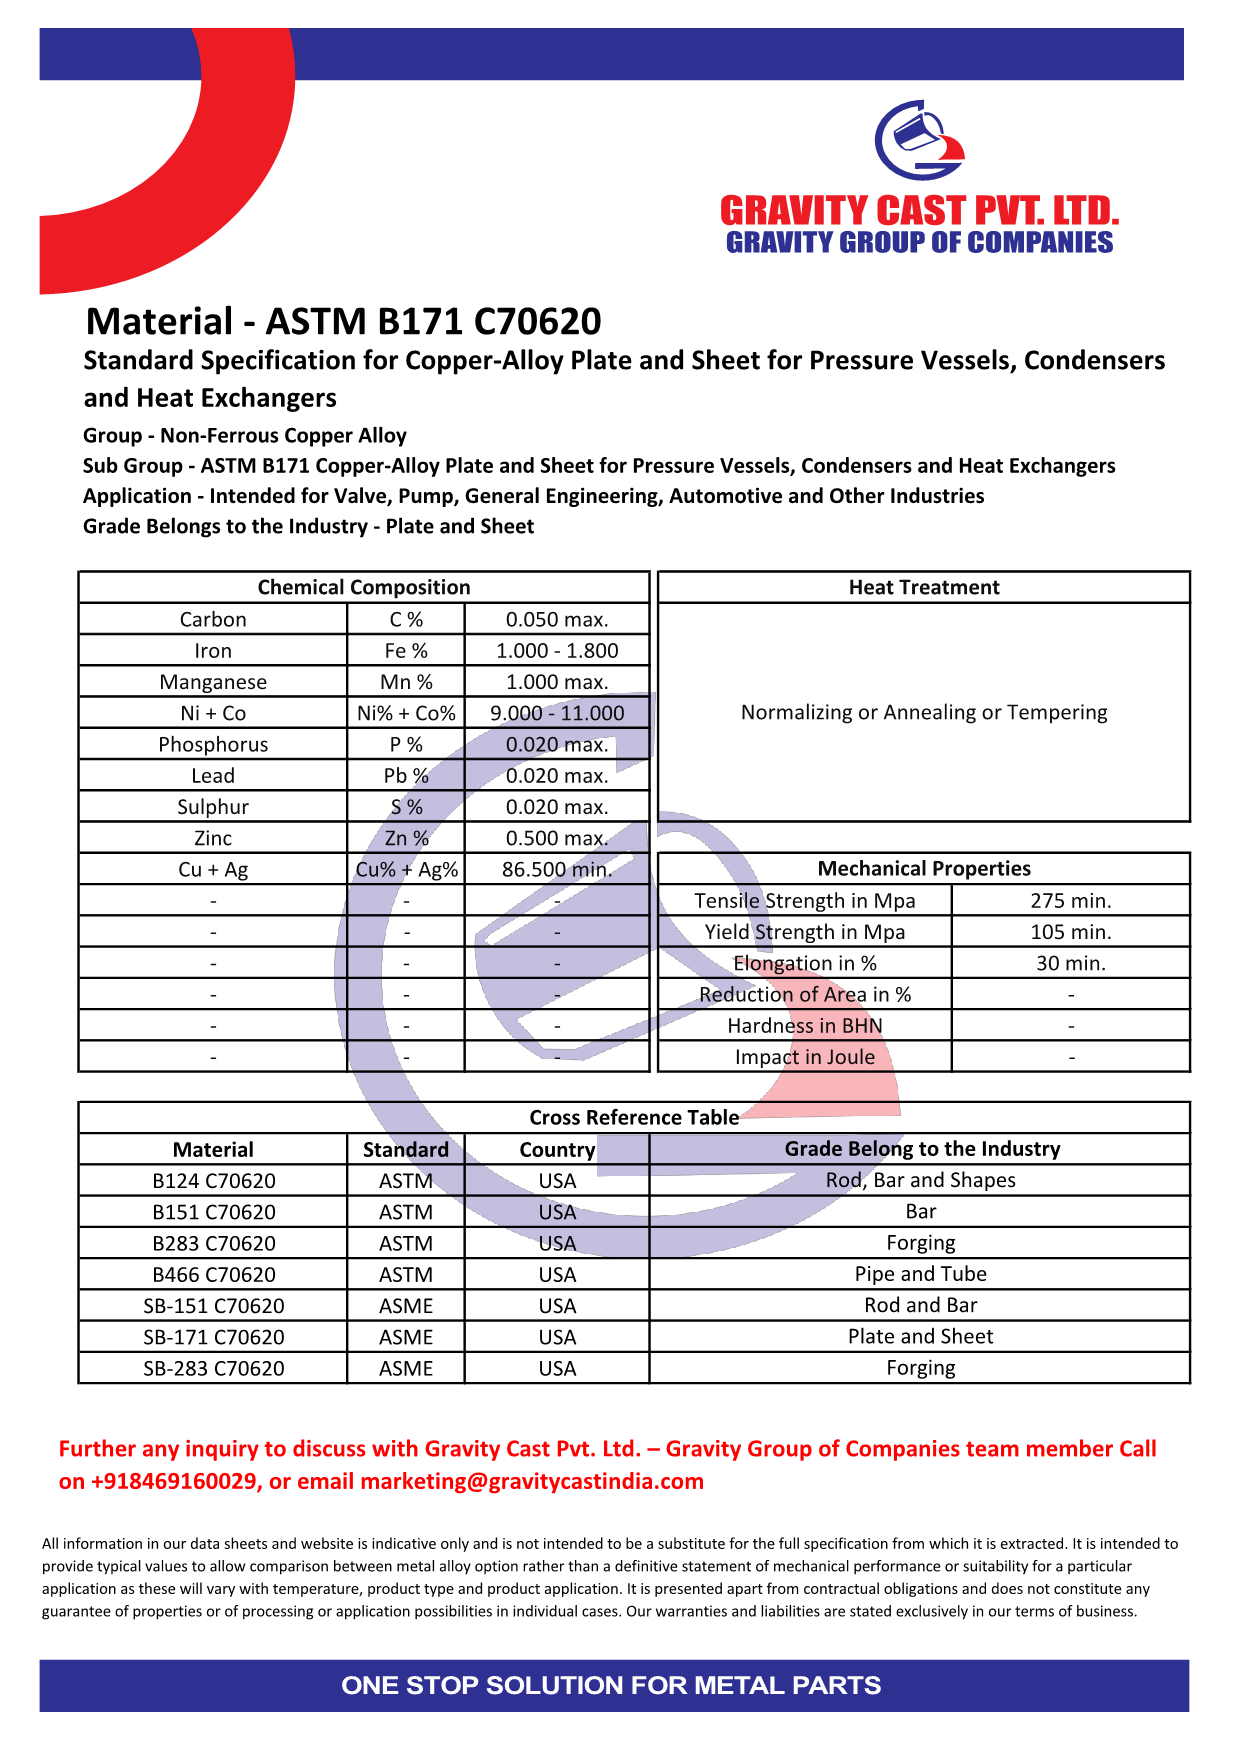 ASTM B171 C70620.pdf